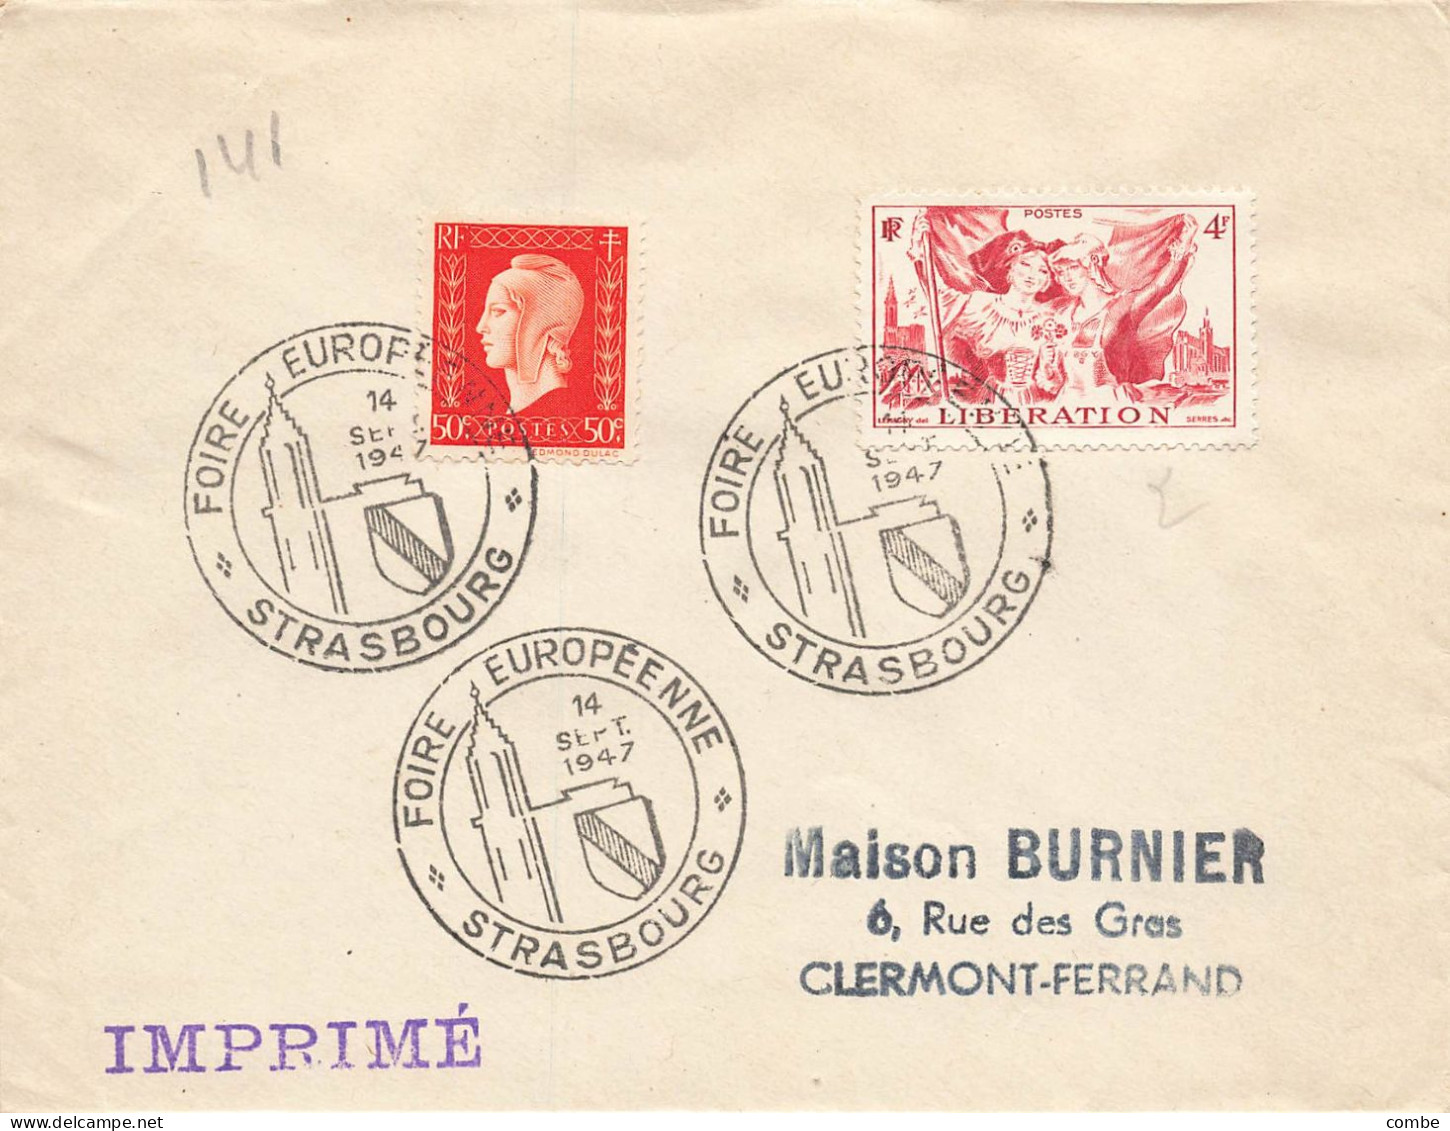 FOIRE EUROPEENNE DE STRASBOURG. 14 SEPT 1947 - Commemorative Postmarks